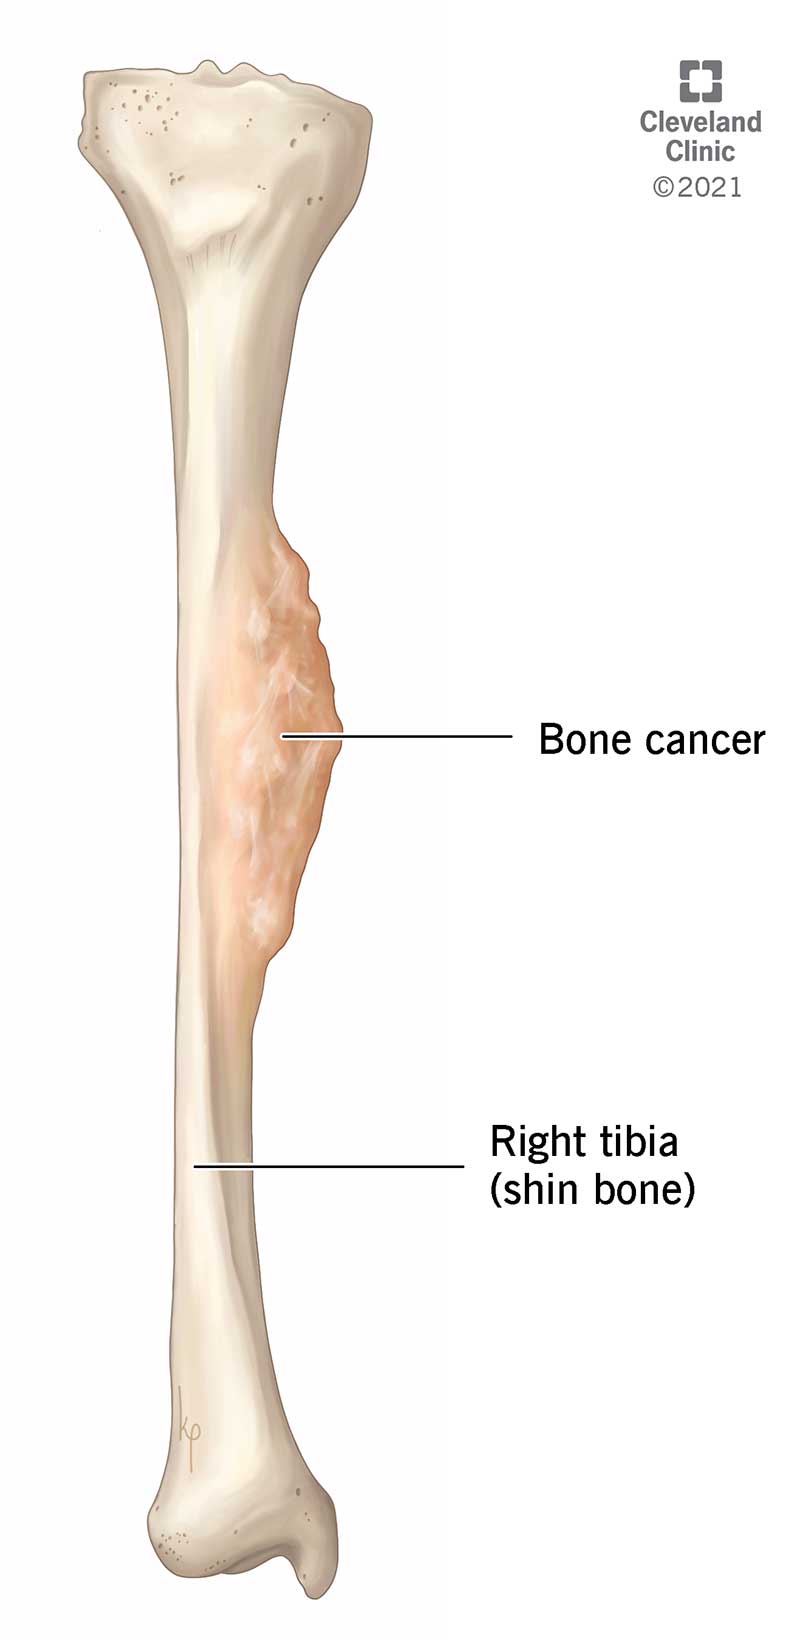 Il cancro osseo è definito come una massa di cellule benigne o cancerose che crescono in un osso.